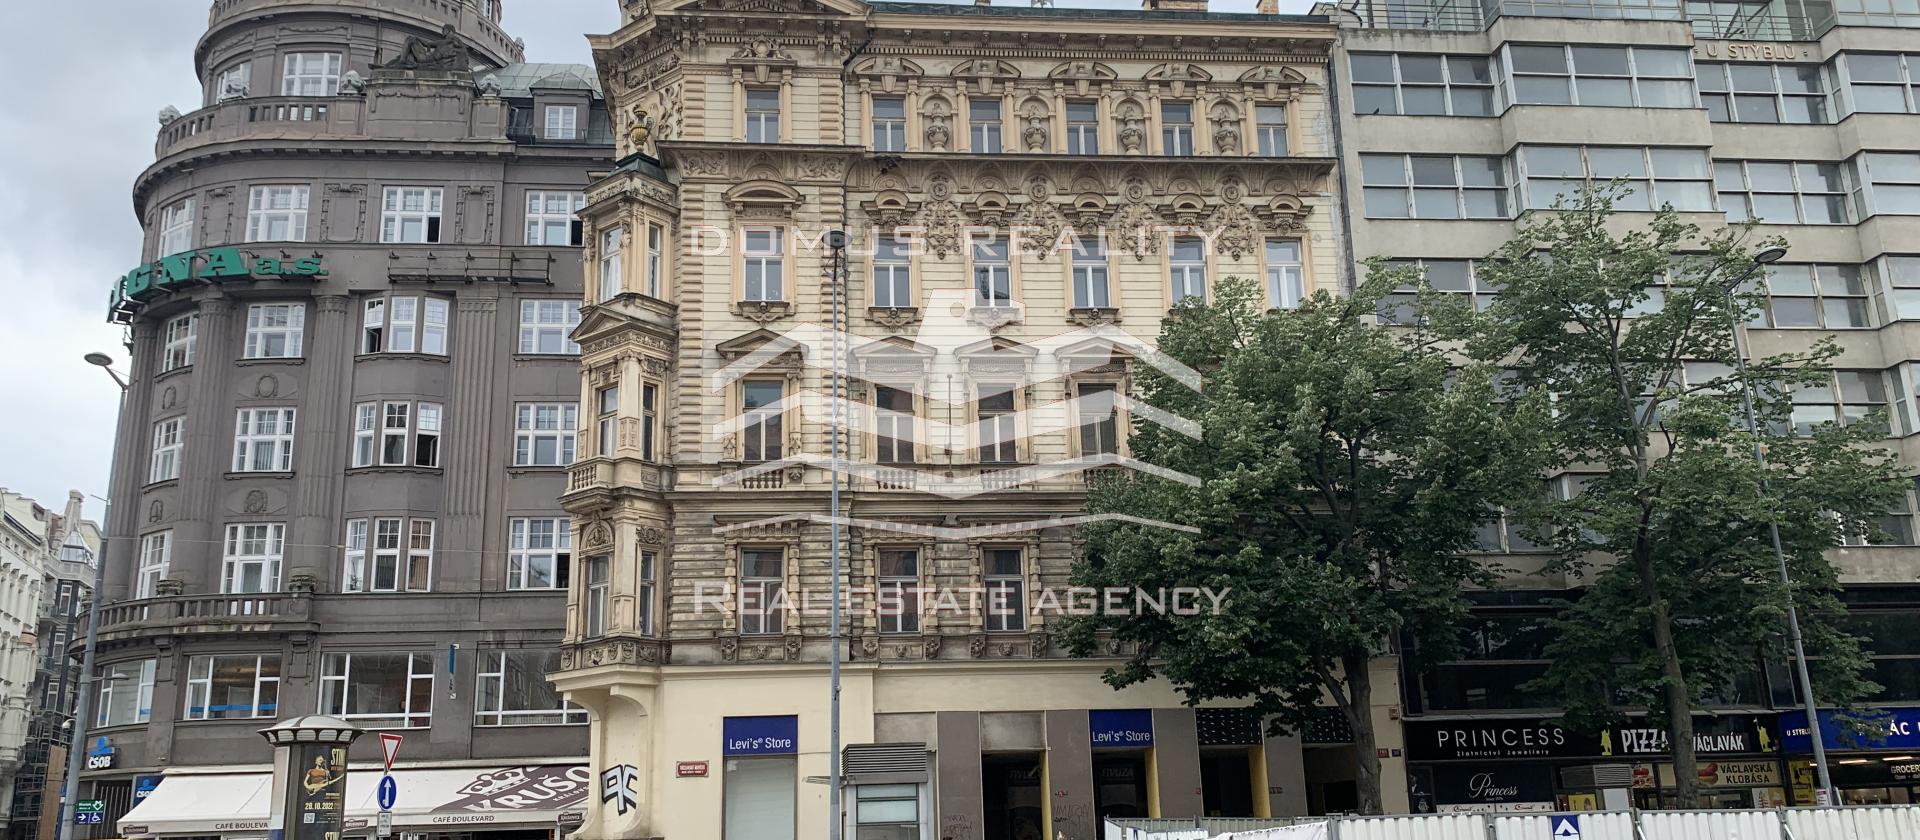 Ve  výhradním zastoupením majitele nabízíme nebytovy prostor v samem centru Prahy